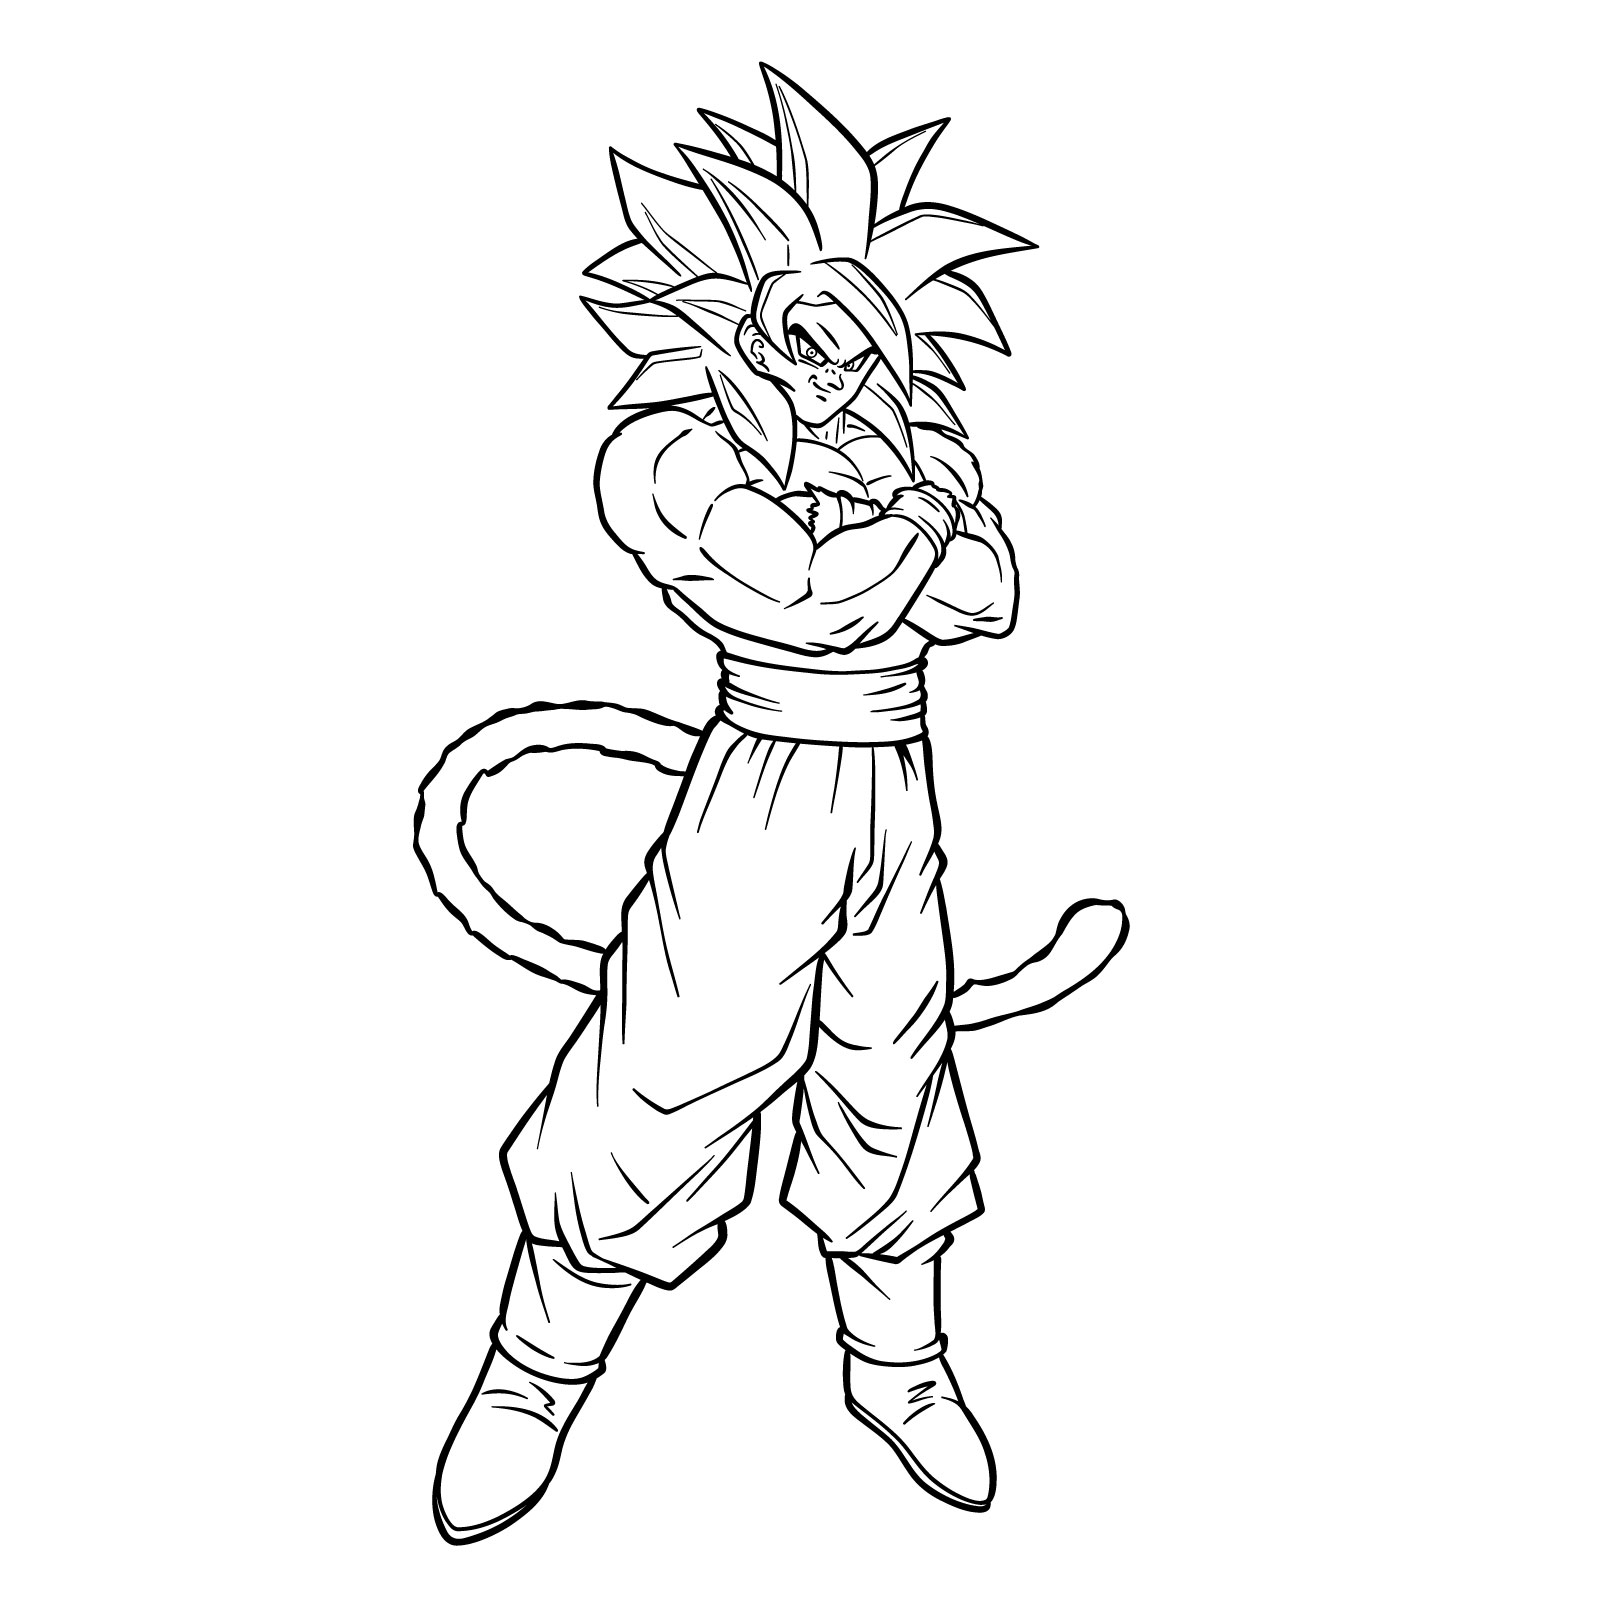 How to tát draw Goku Super Saiyan 4 - final step